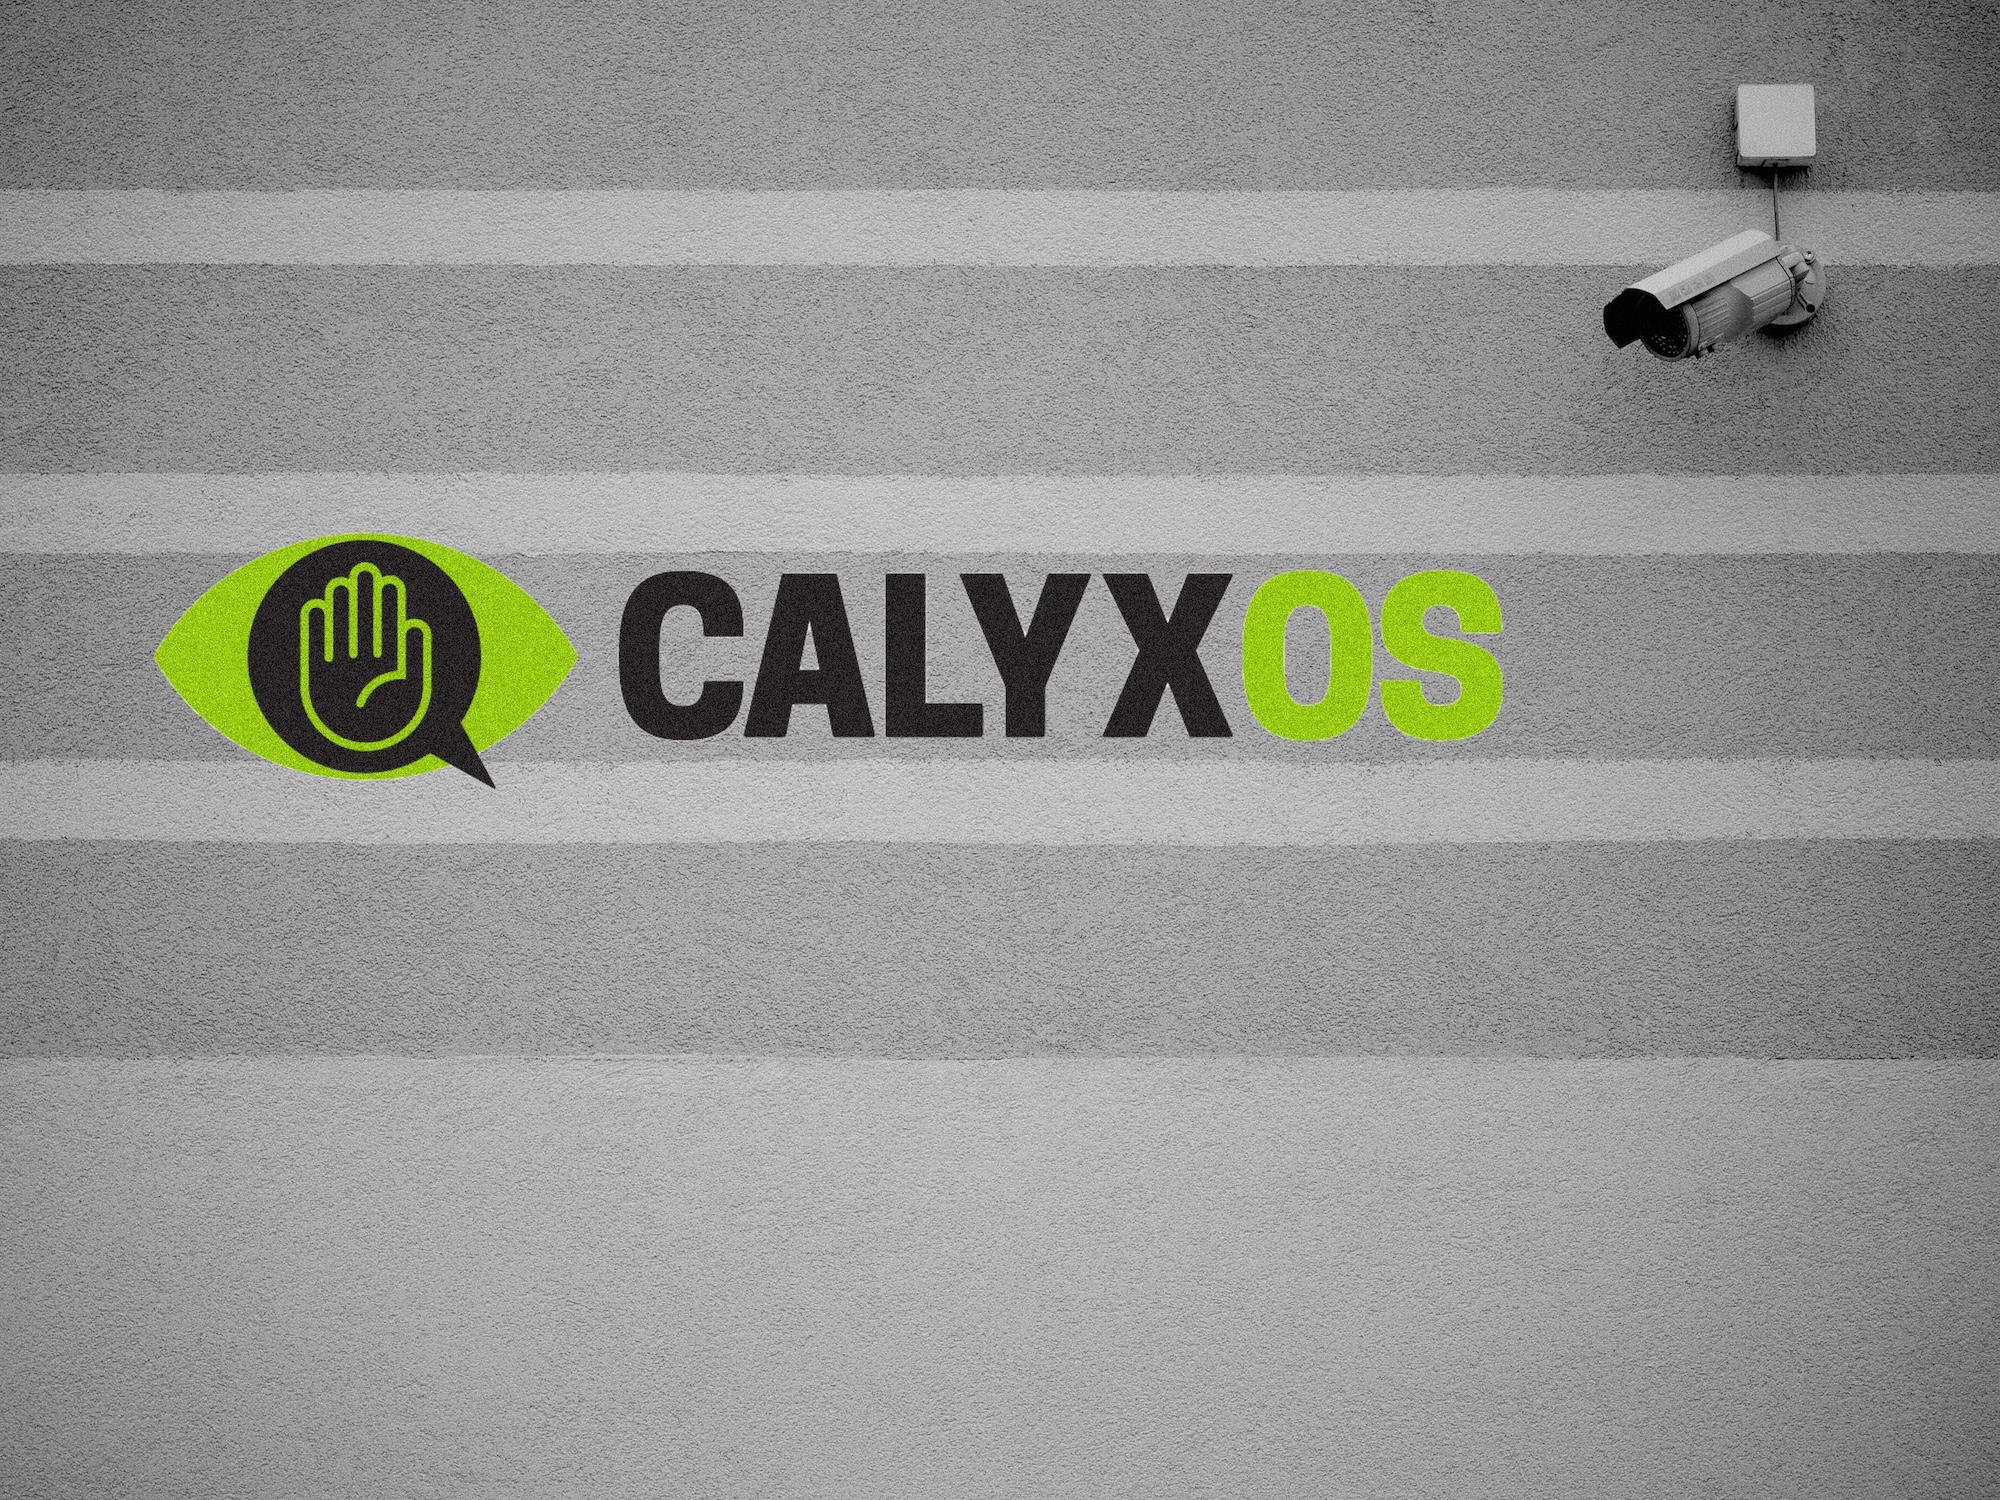 Zu sehen ist eine Überwachungskamera und das CalyxOS-Logo (Eine Faust mit Blitz).